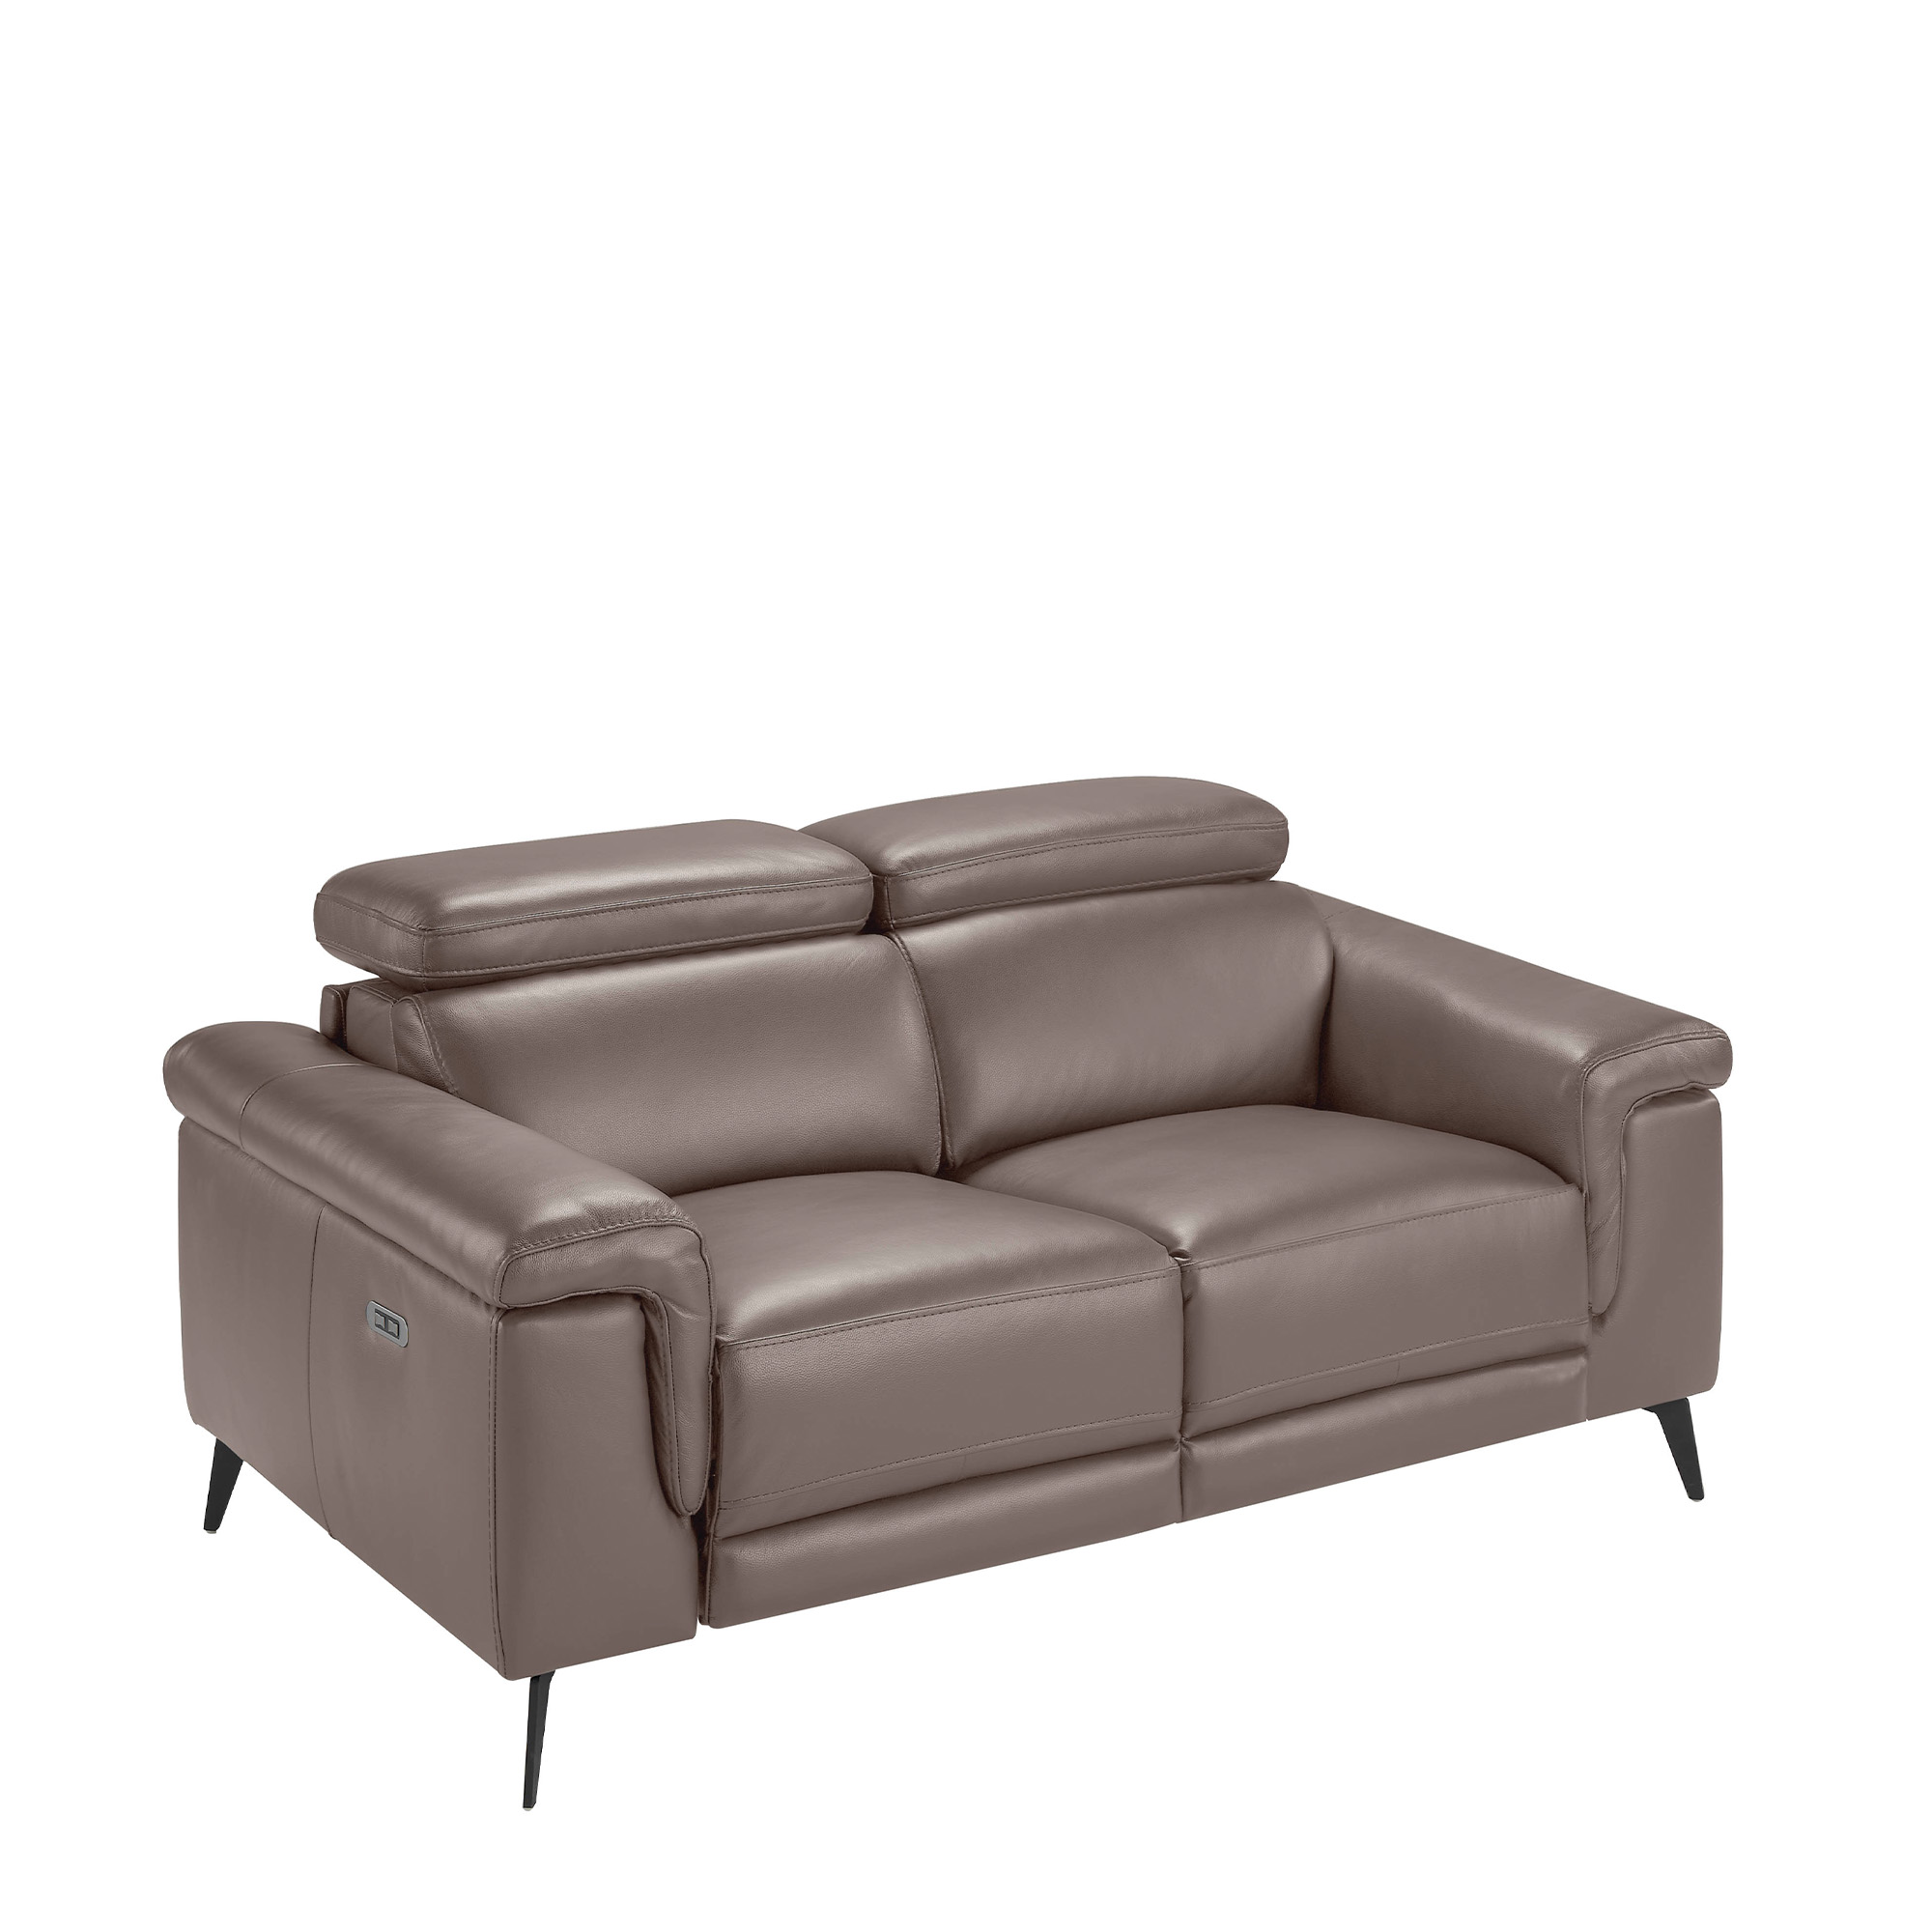 2-Sitzer-Sofa mit Bezug aus nerzfarbenem Rindsleder und schwarzen Stahlbeinen.